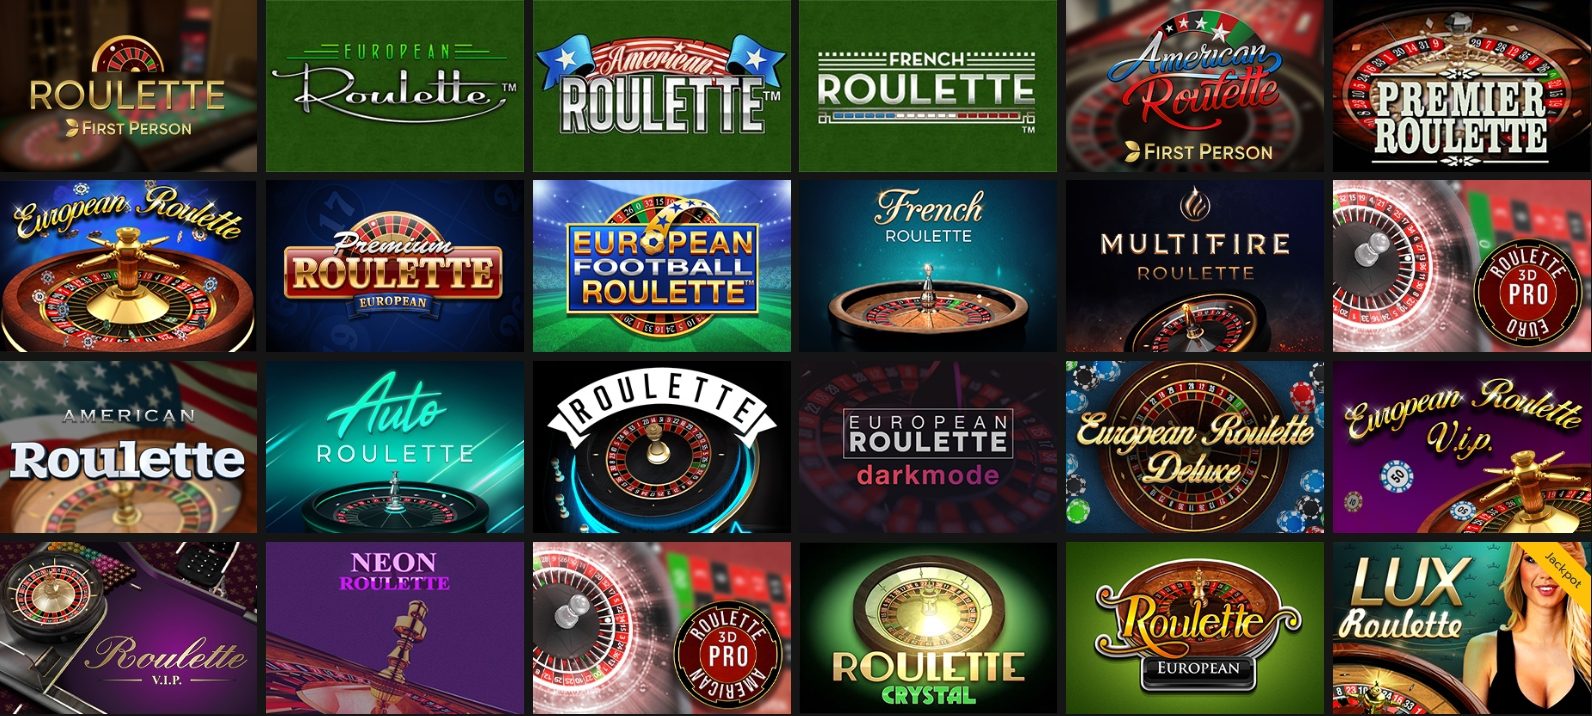 Roulette at Horus Casino